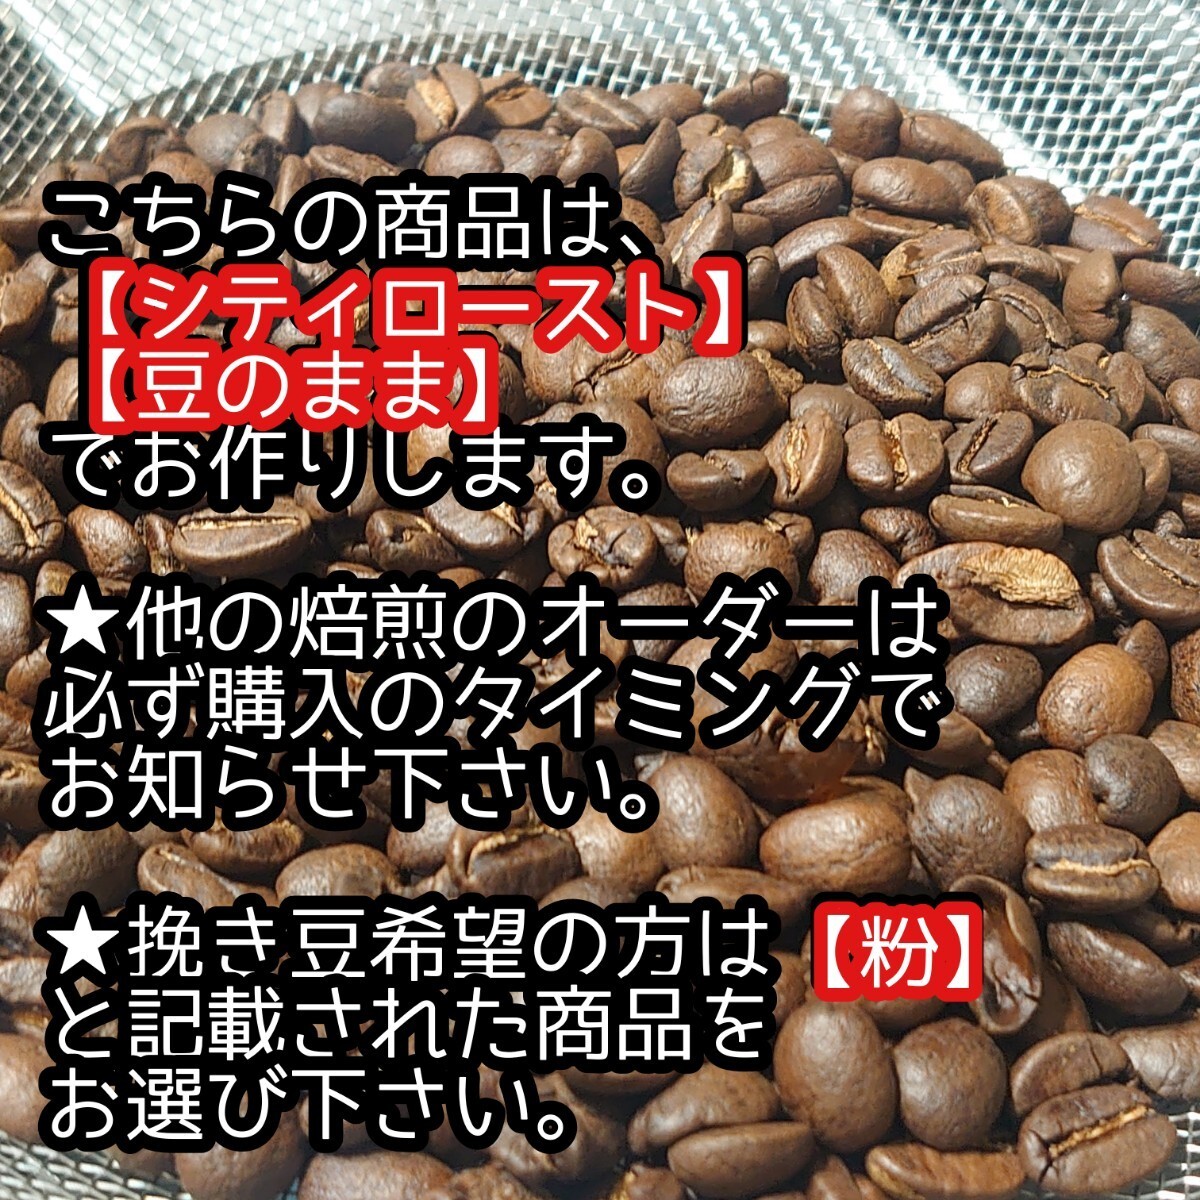 【豆】 モカ イルガチャフェ 生豆時 200g エチオピア コーヒー 珈琲 自家焙煎 コーヒー豆 モカコーヒー